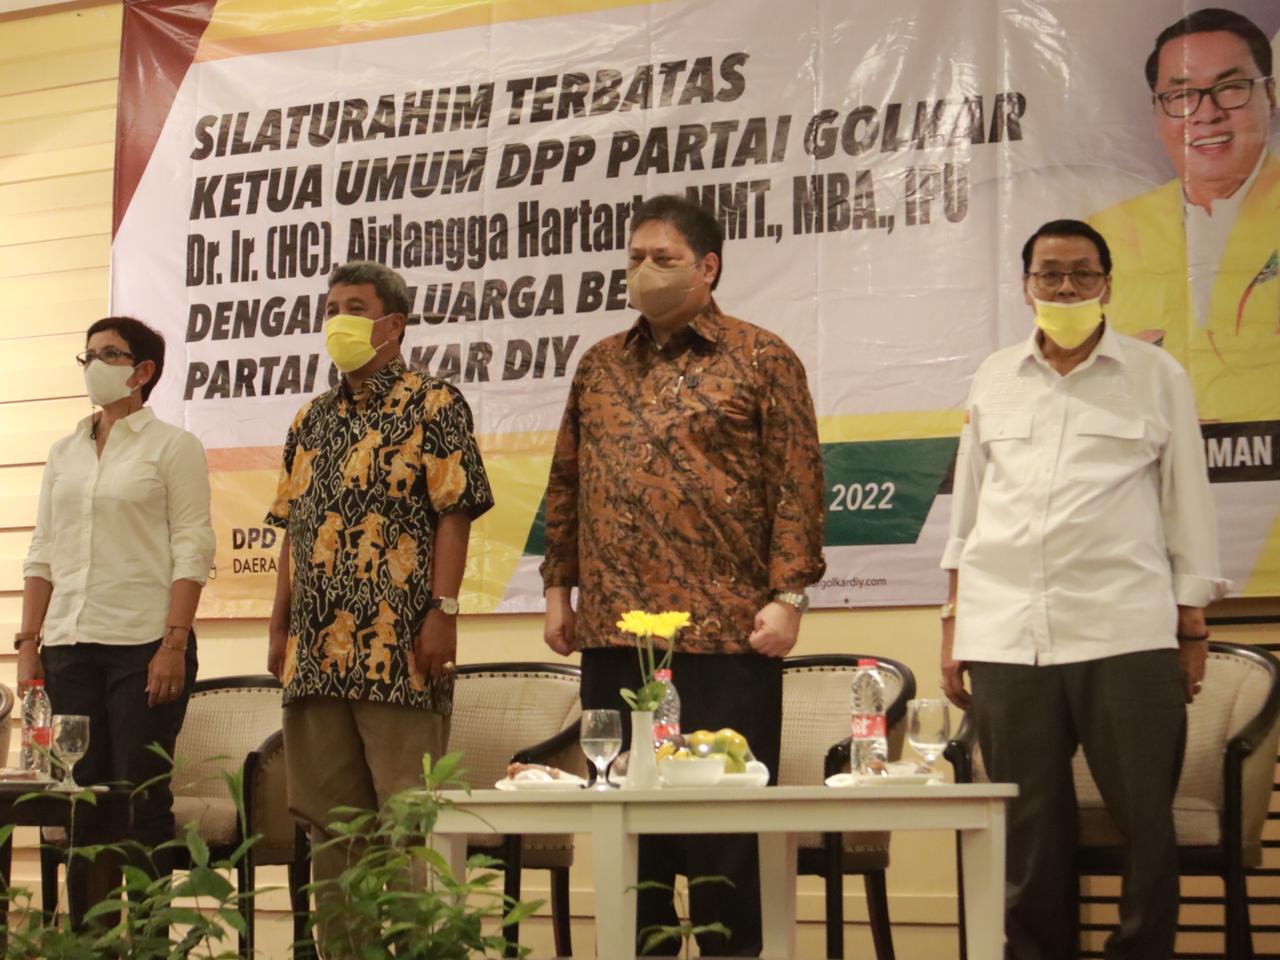 Ketua Umum Airlangga Targetkan Yogyakarta Jadi Lumbung Suara Golkar